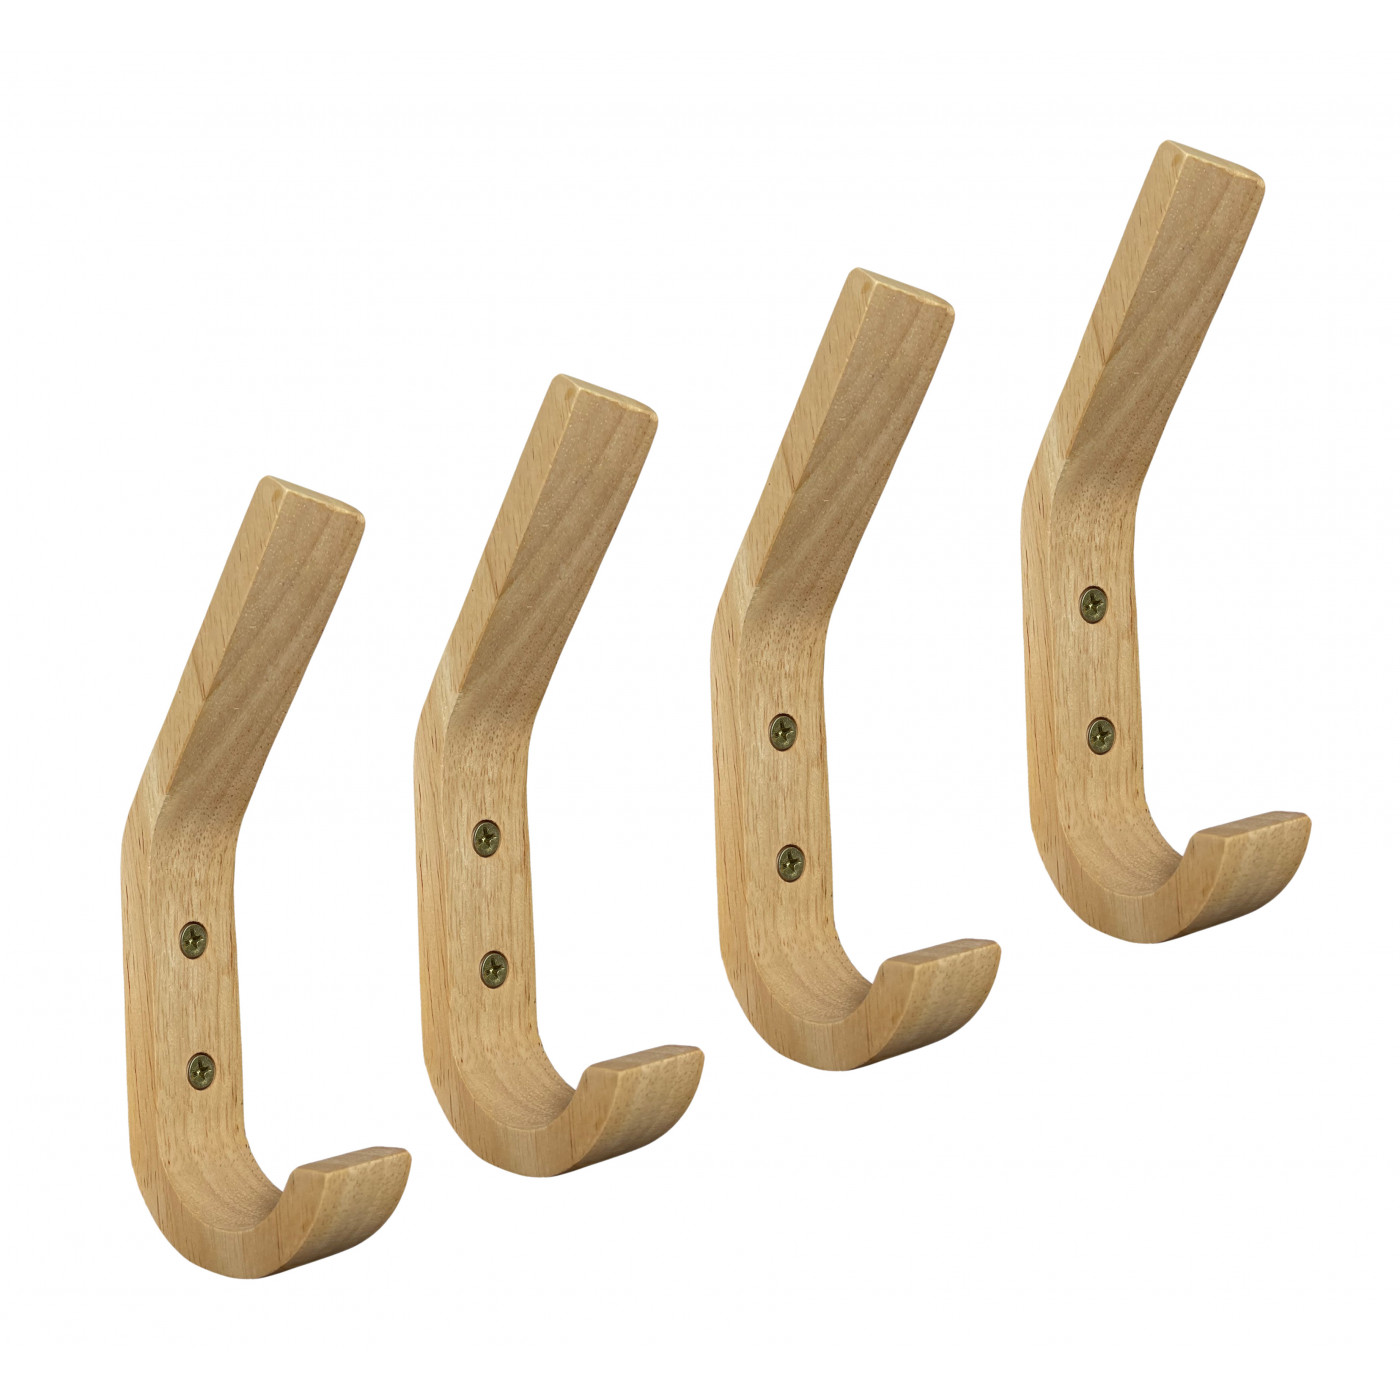 nerveus worden toewijzen beschaving Set van 4 houten kapstokhaken (rubberwood) - Wood, Tools & Deco